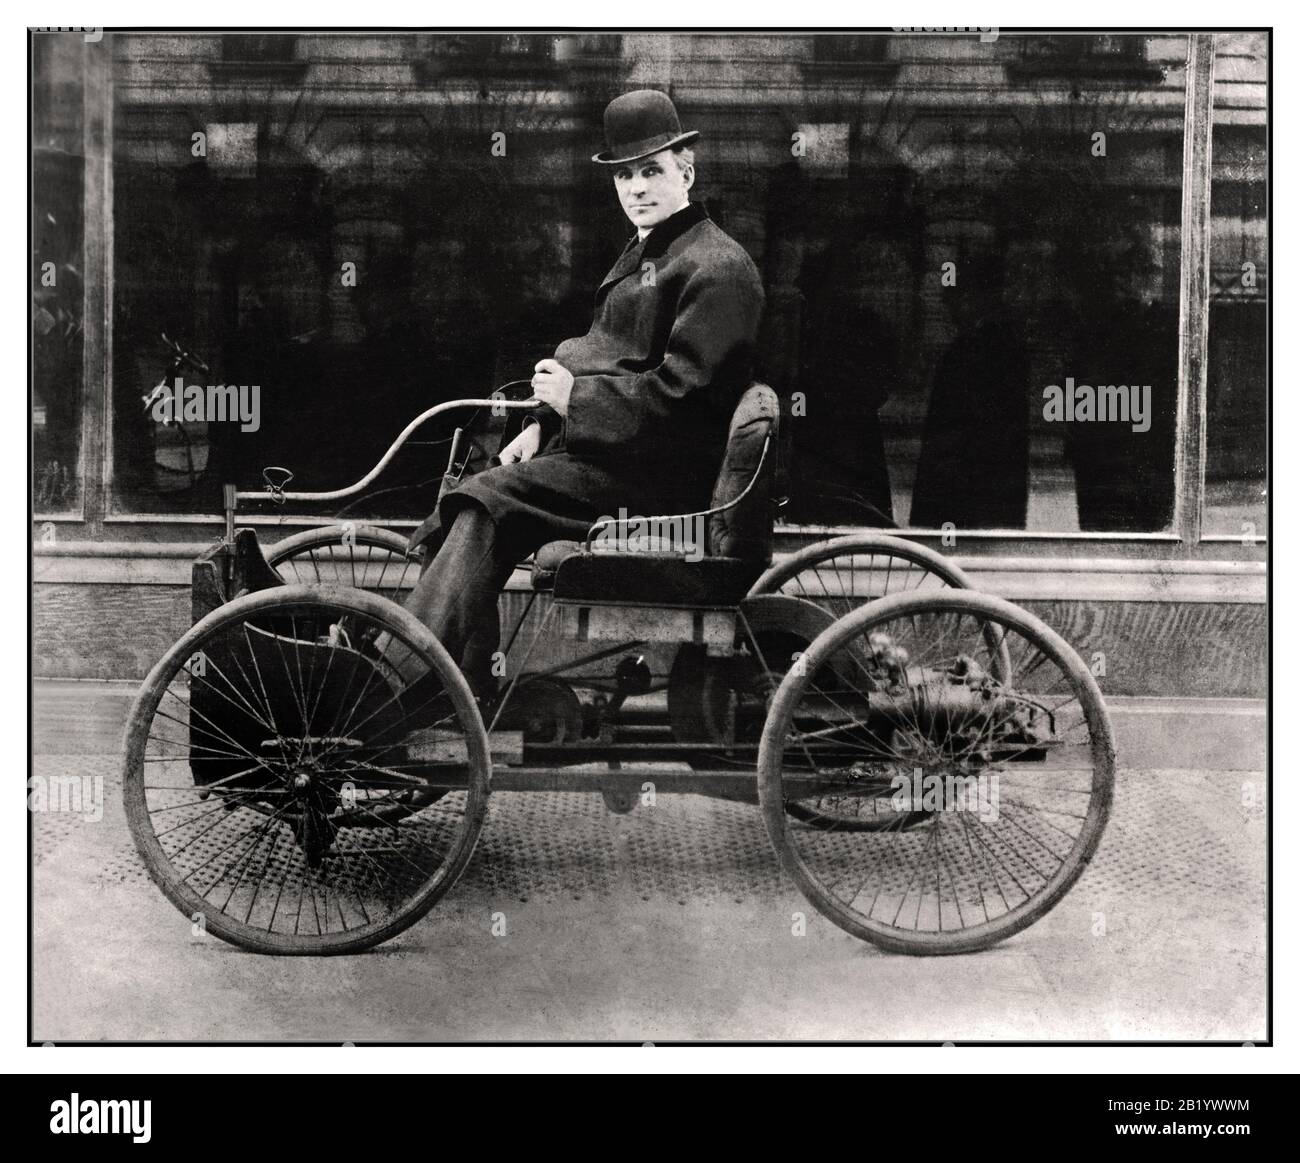 Henry Ford Quadricycle archive vintage 1890 assis et posant sur un Ford Quadricycle le premier véhicule développé par Ford, un inventeur visionnaire et qualifié. Cette première voiture était un cadre simple avec un moteur à gaz et quatre roues de vélo montées sur lui Les premières voitures ont été construites à la main, une par une, et très cher. Les machines particulières ont été considérées comme des jouets pour les riches Dans les années 1890, le 'chariot sans cheval' était une idée relativement nouvelle. Banque D'Images